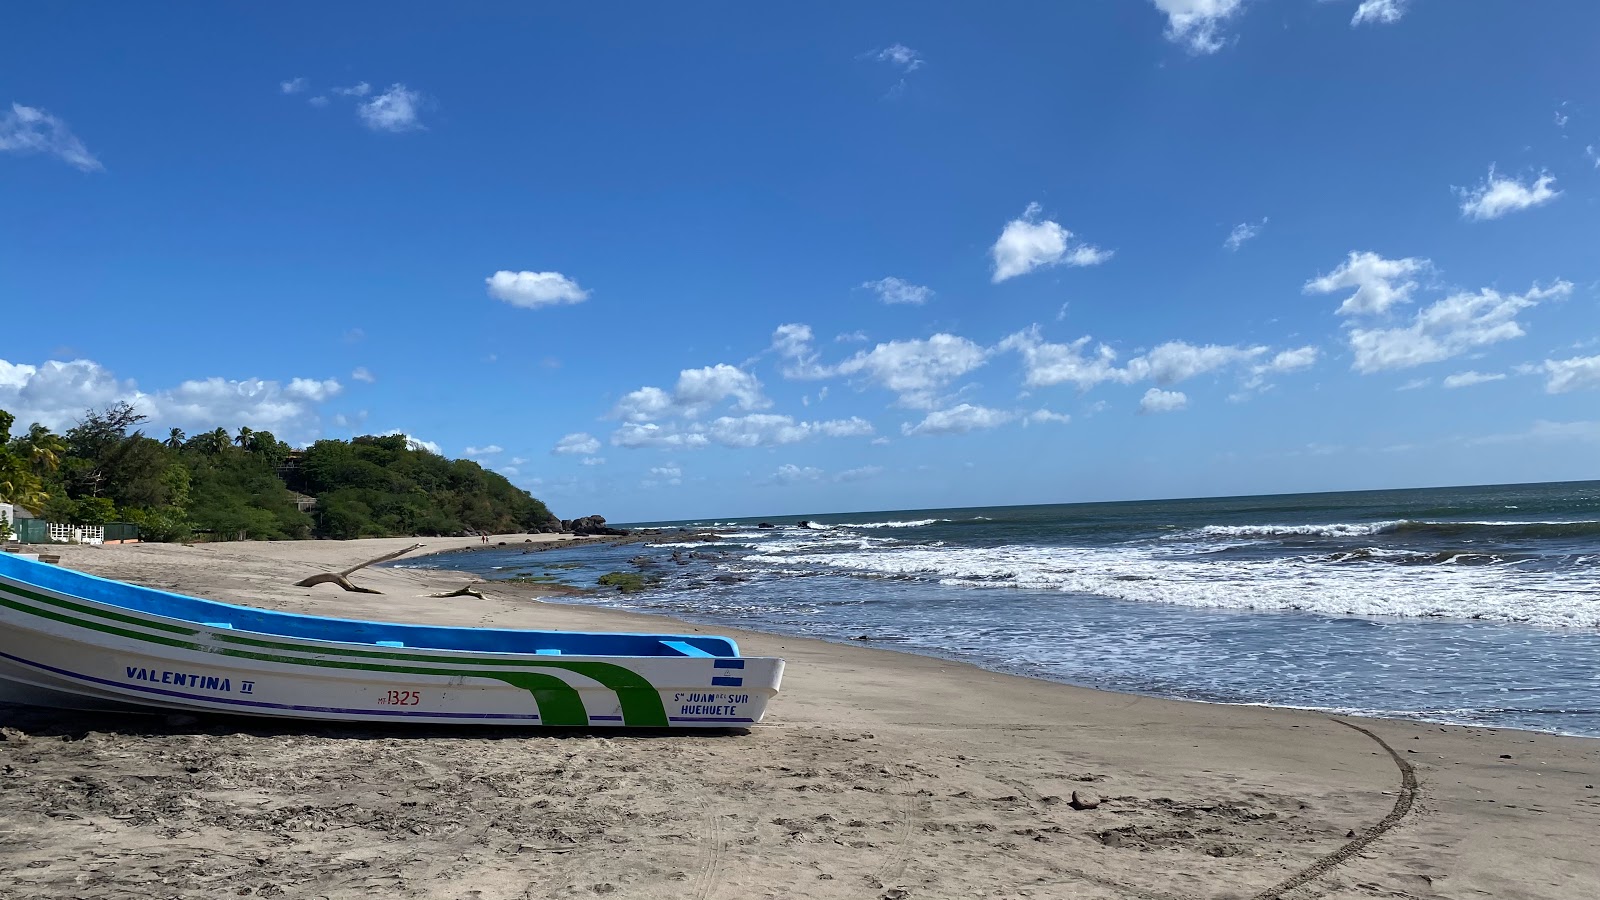 Zdjęcie Playa Hermosa - popularne miejsce wśród znawców relaksu